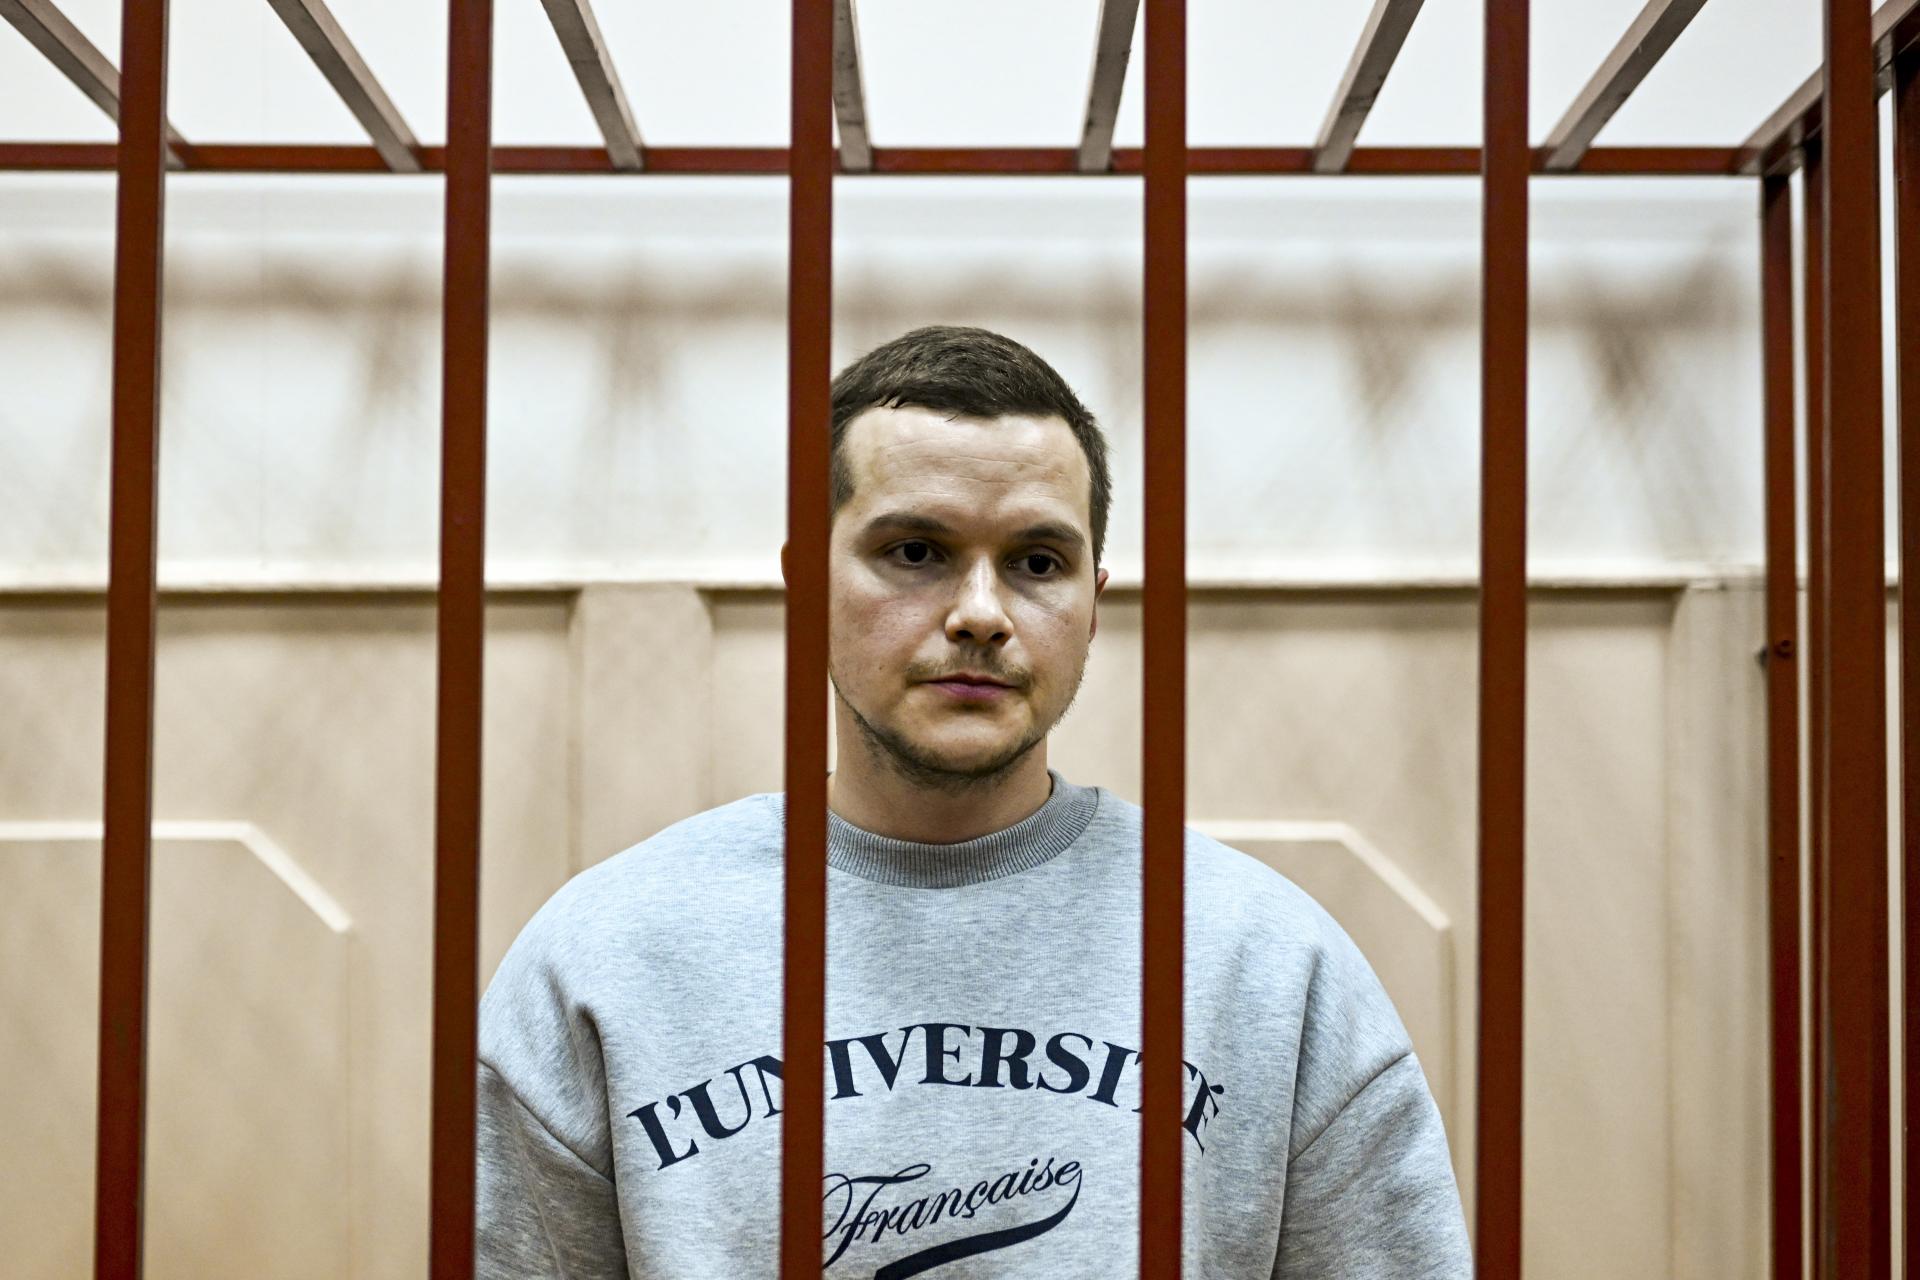 Moskovský súd rozhodol: Navaľného právnici sú vo väzbe pre podozrenie z účasti v extrémistickej skupine